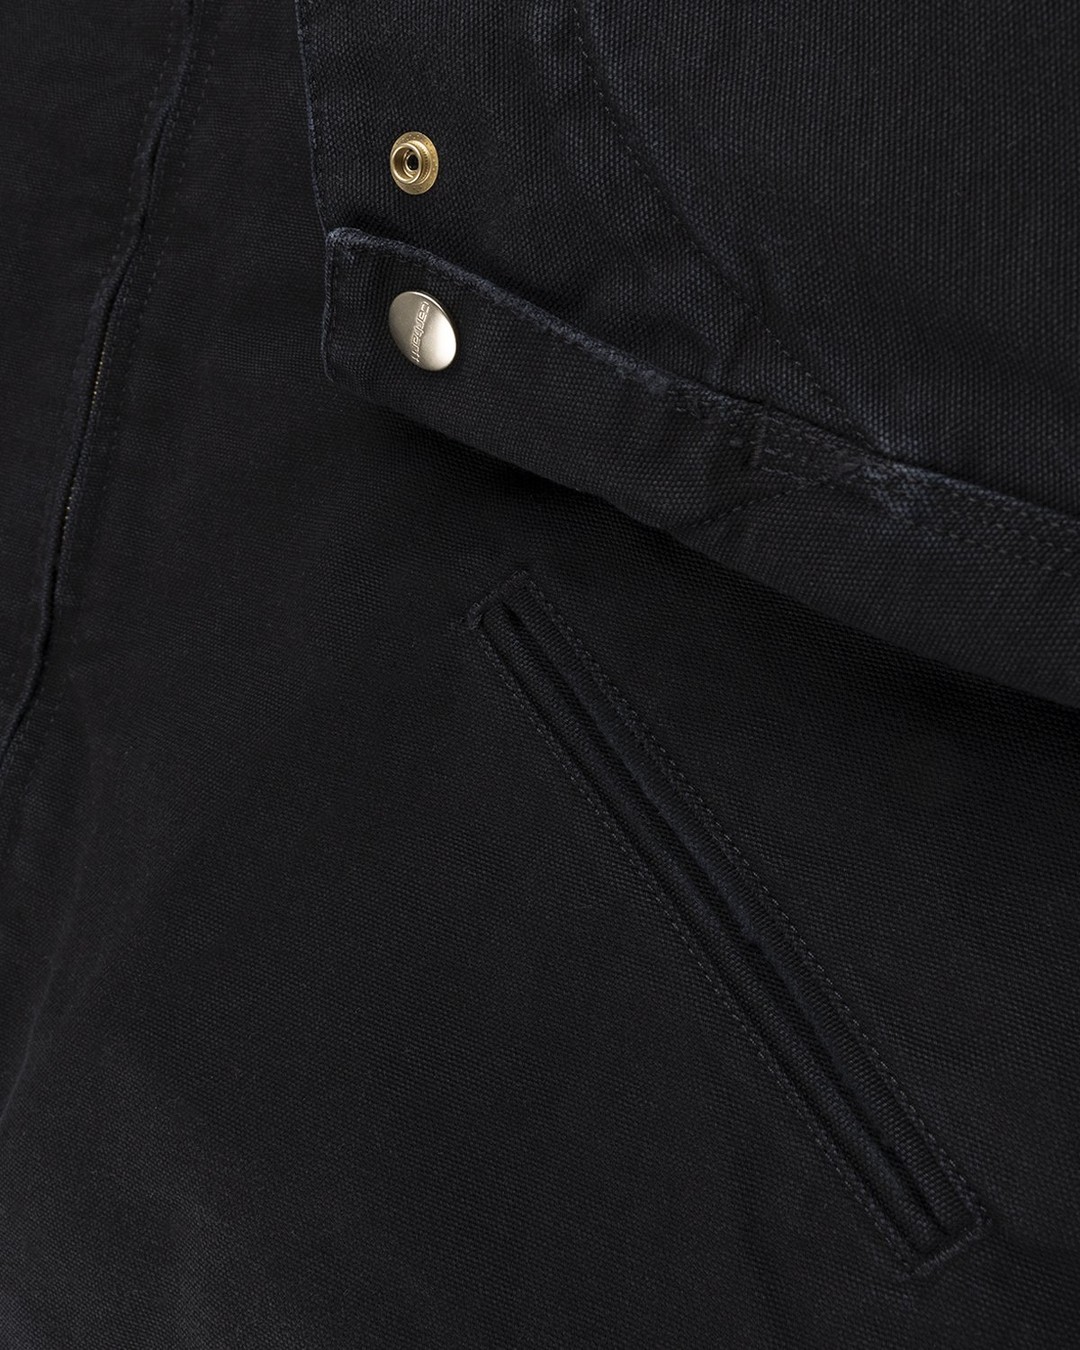 Carhartt WIP – OG Detroit Jacket Black - Outerwear - Black - Image 4